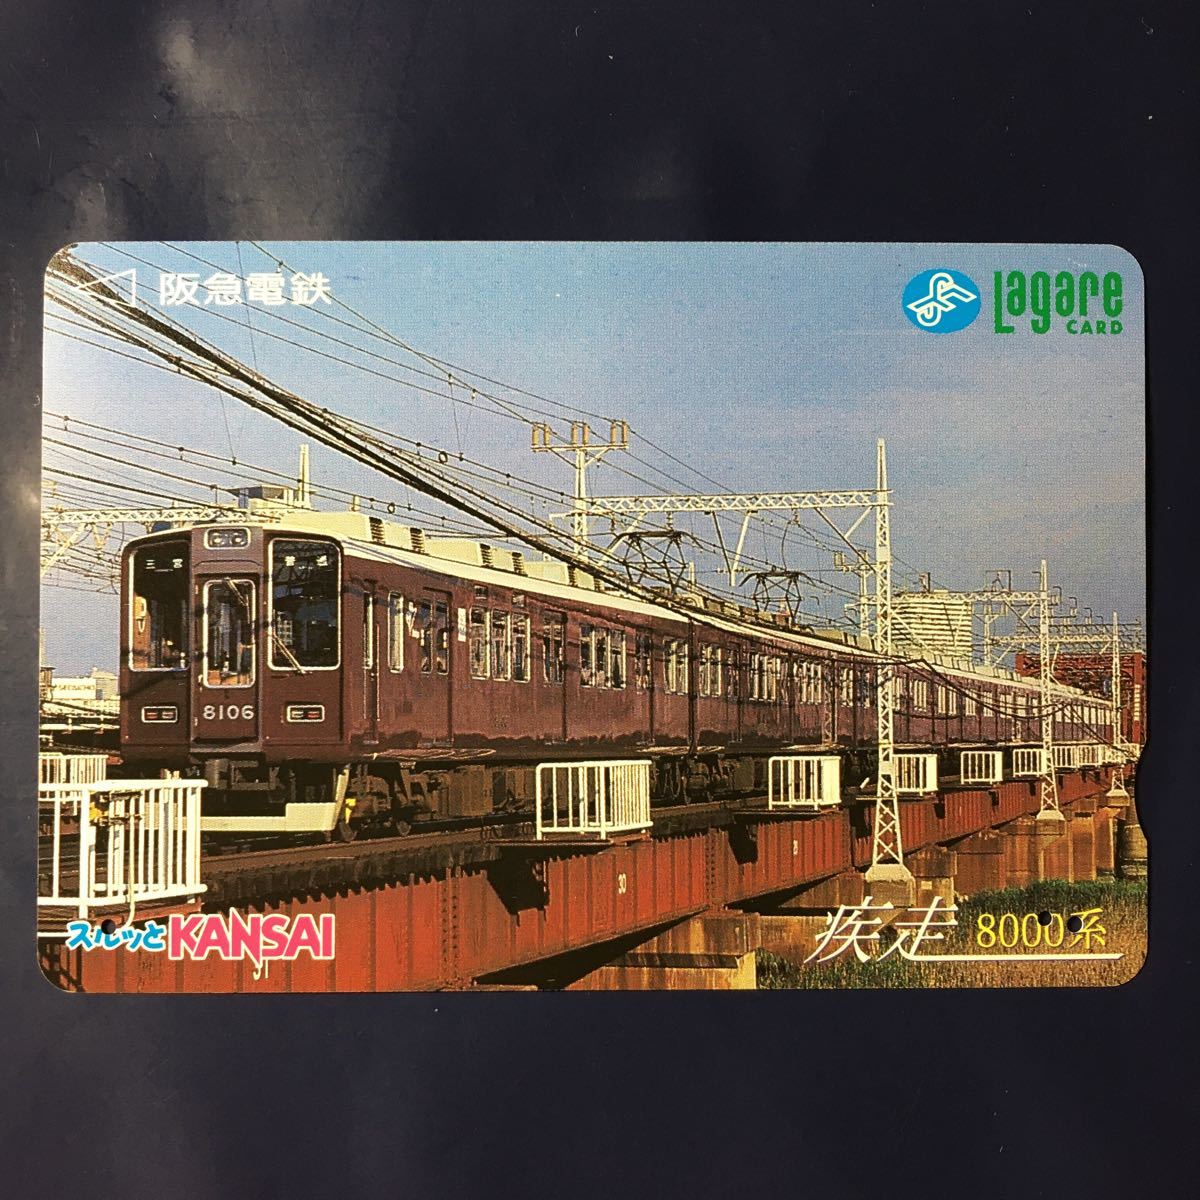 1997年8月1日発売柄ー「疾走8000系」ー阪急ラガールカード(使用済スルッとKANSAI)_画像1